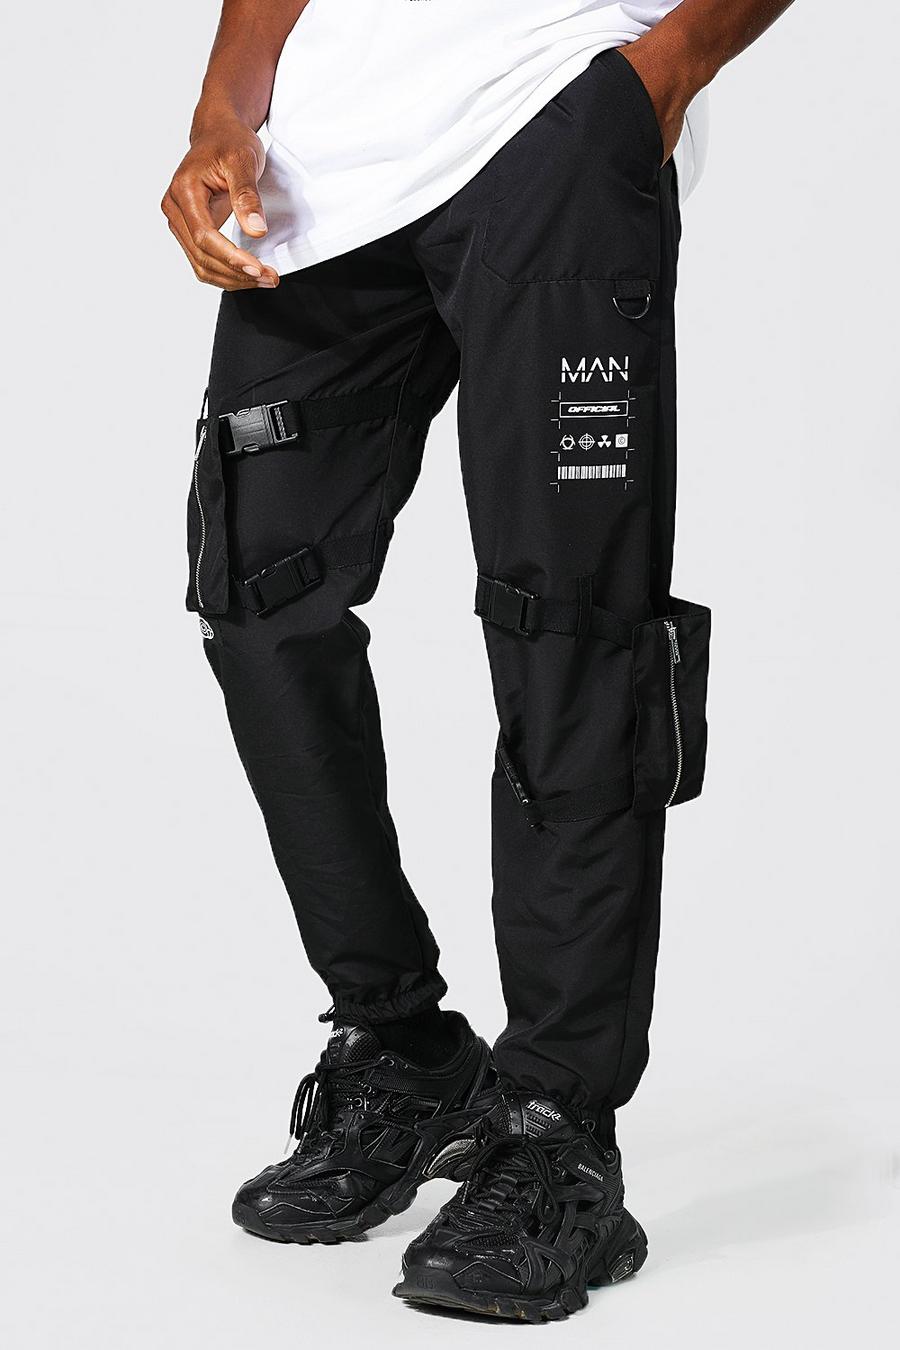 שחור מכנסי דגמ"ח בציפוי עמיד עם כיס ניתן להחלפה וכיתוב Man image number 1